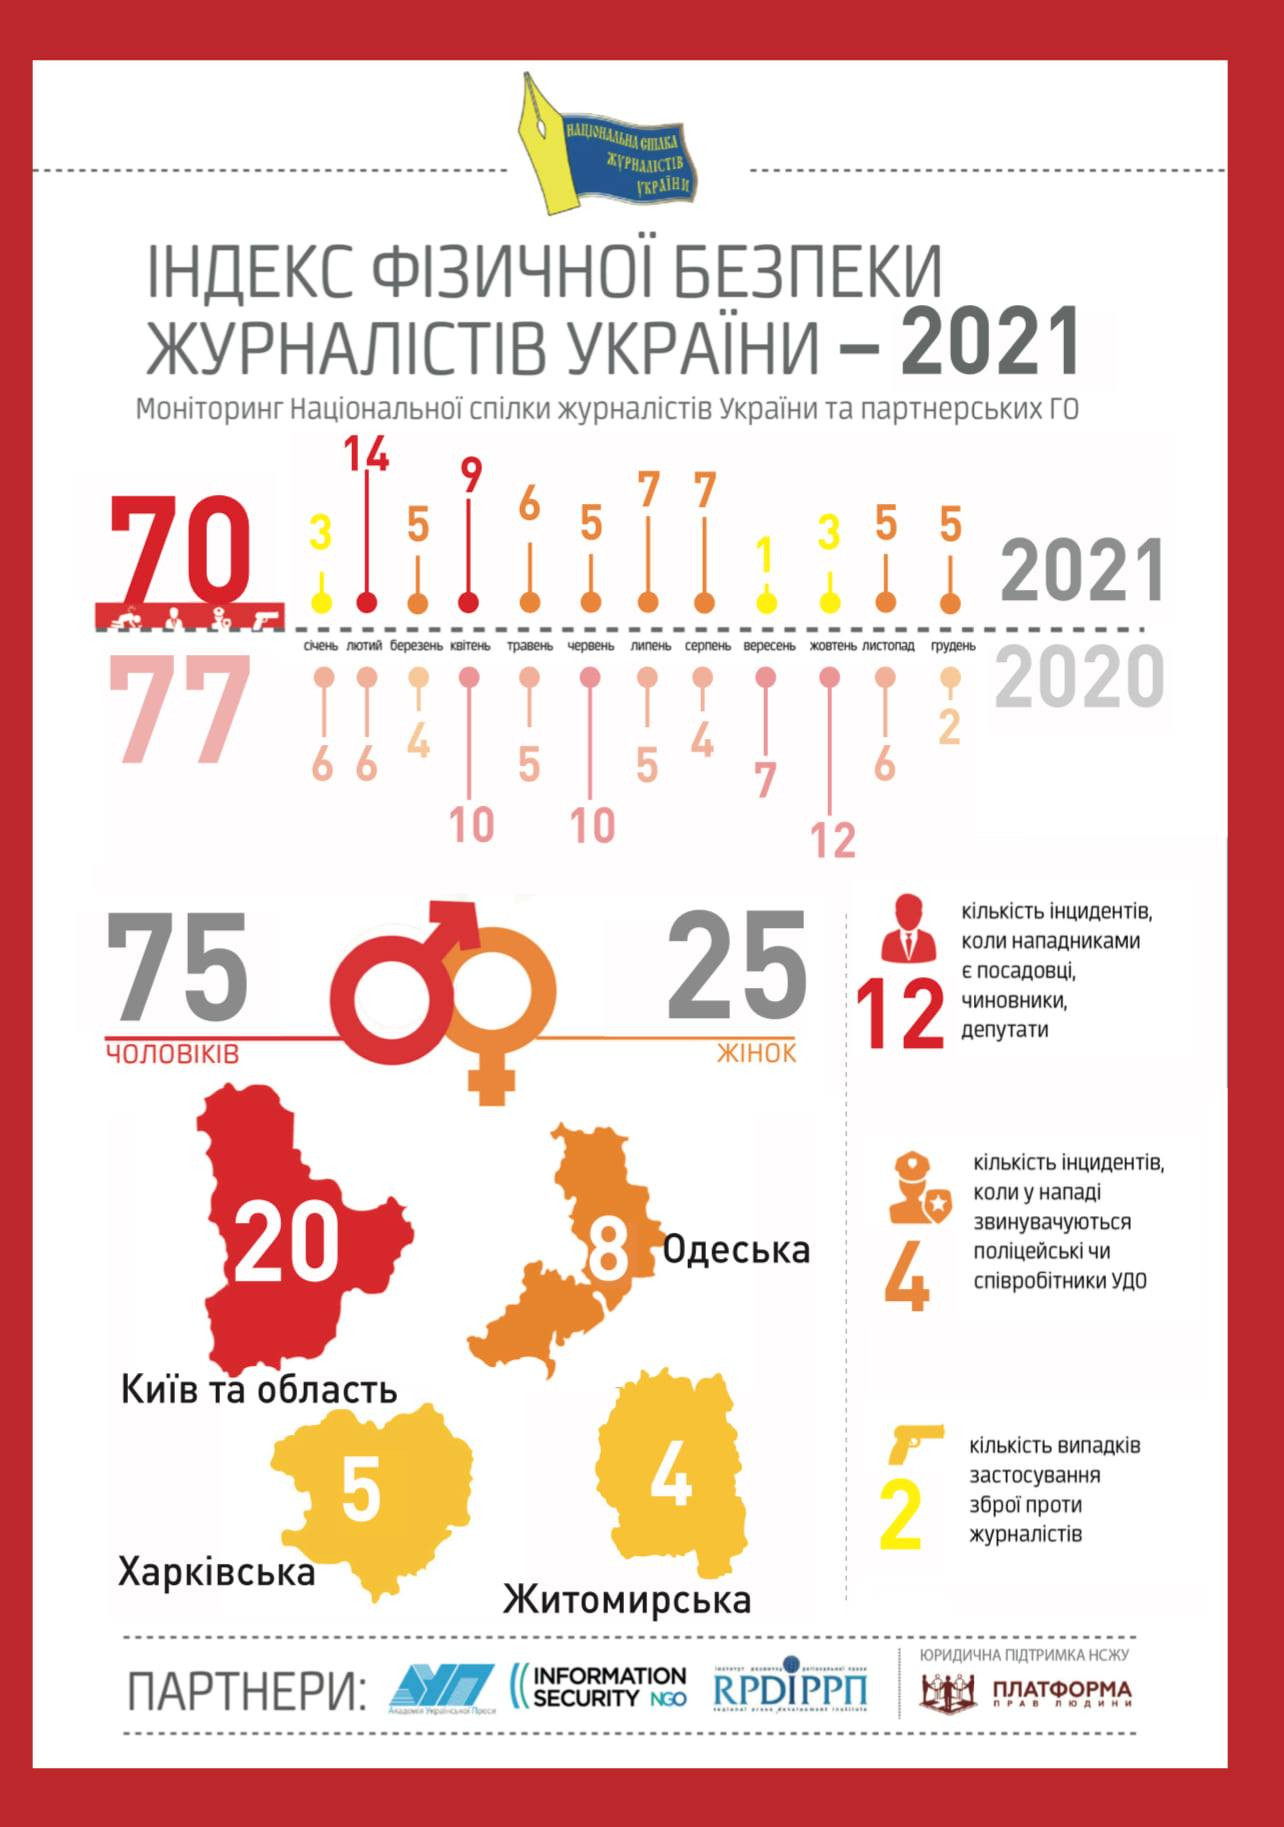 20 епізодів за рік: Київ та область очолили антирейтинг агресії проти журналістів (інфографіка) - зображення